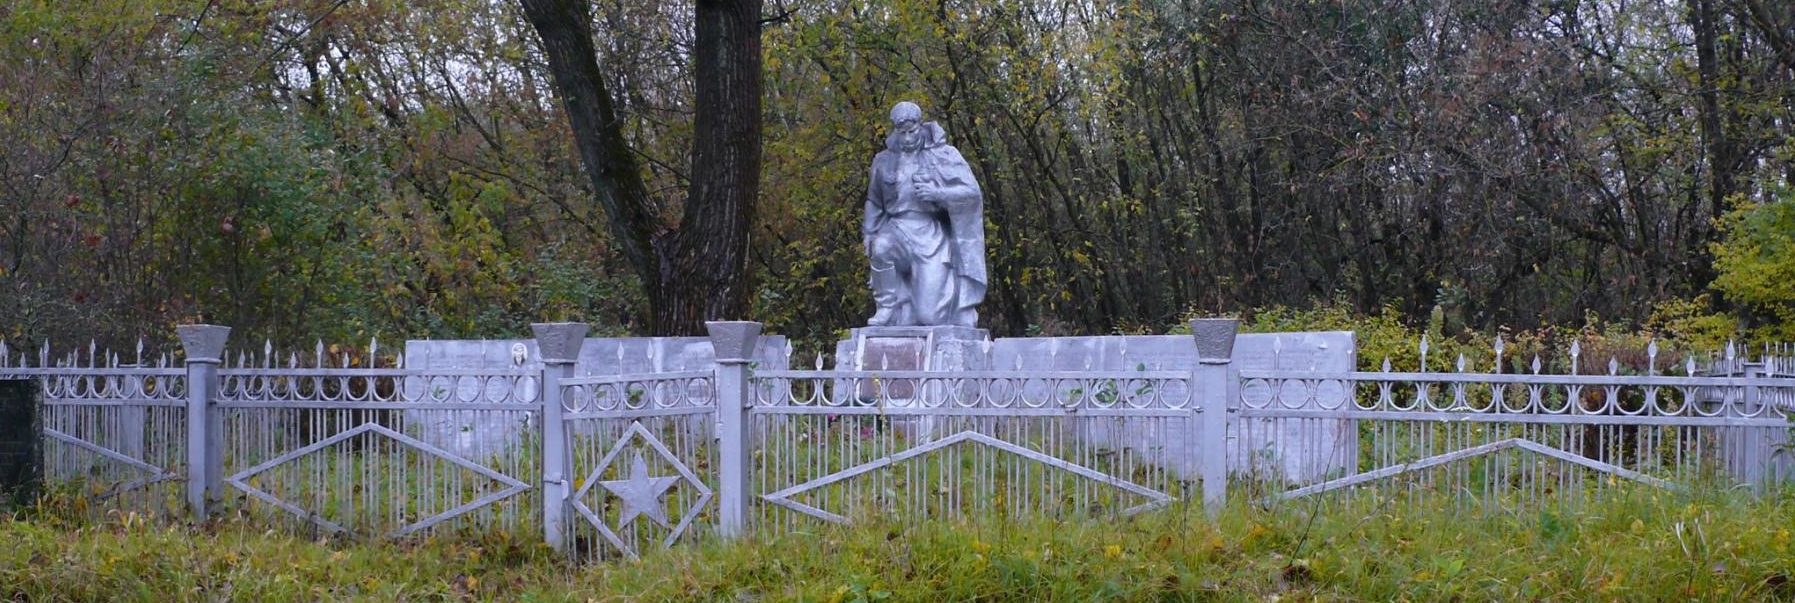 с. Залесье, Чернобыльская зона отчуждения. Памятник на братской могиле, в которой захоронены воины 6-й Гвардейской стрелковой дивизии, 8-й и 280-й стрелковой дивизий, в т.ч. пять Героев Советского Союза.